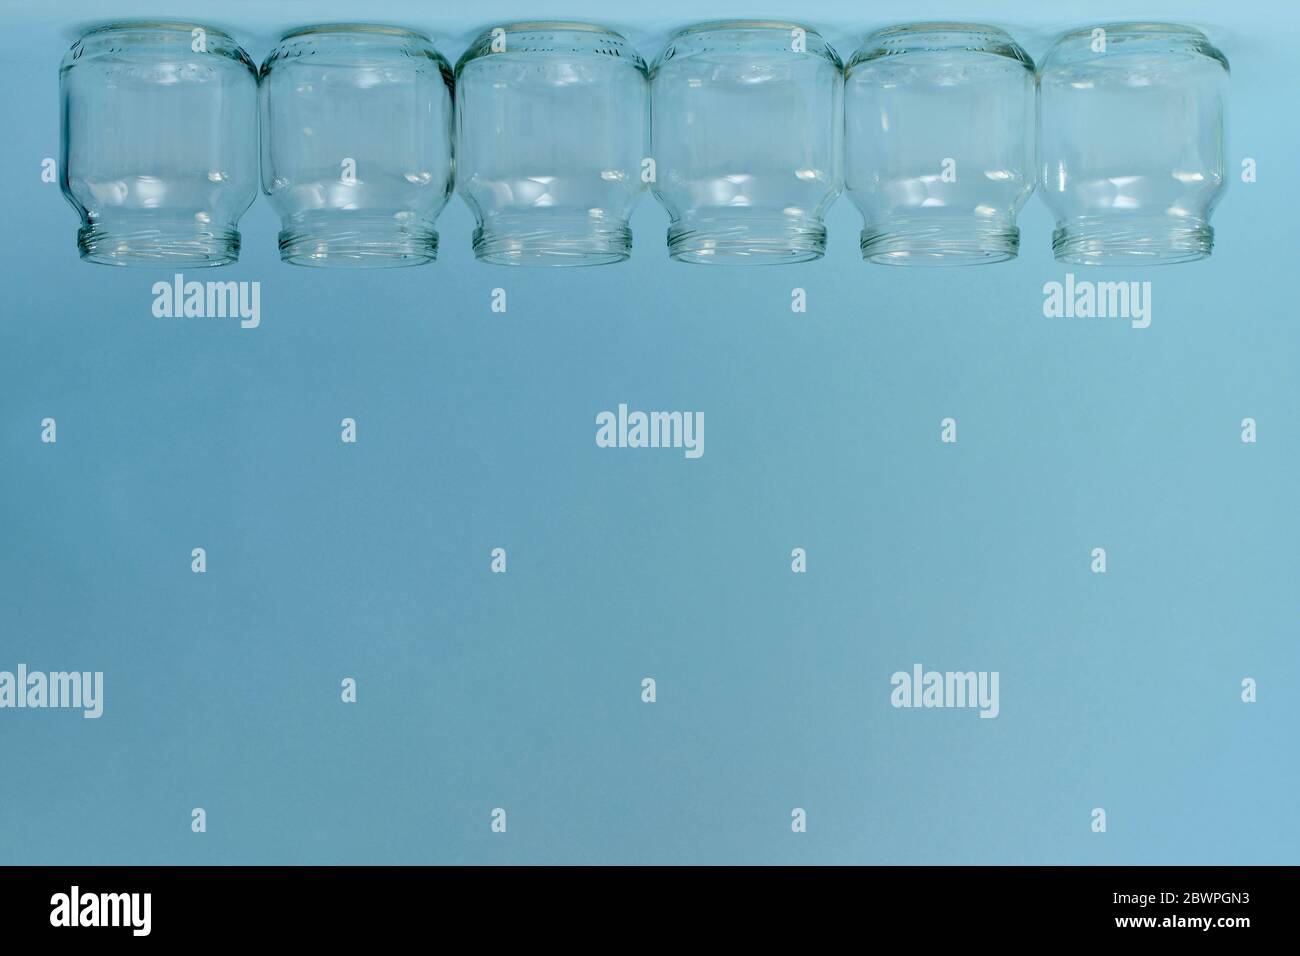 Une rangée horizontale de six pots transparents inversés en haut du cadre sur un fond bleu libre. Banque D'Images